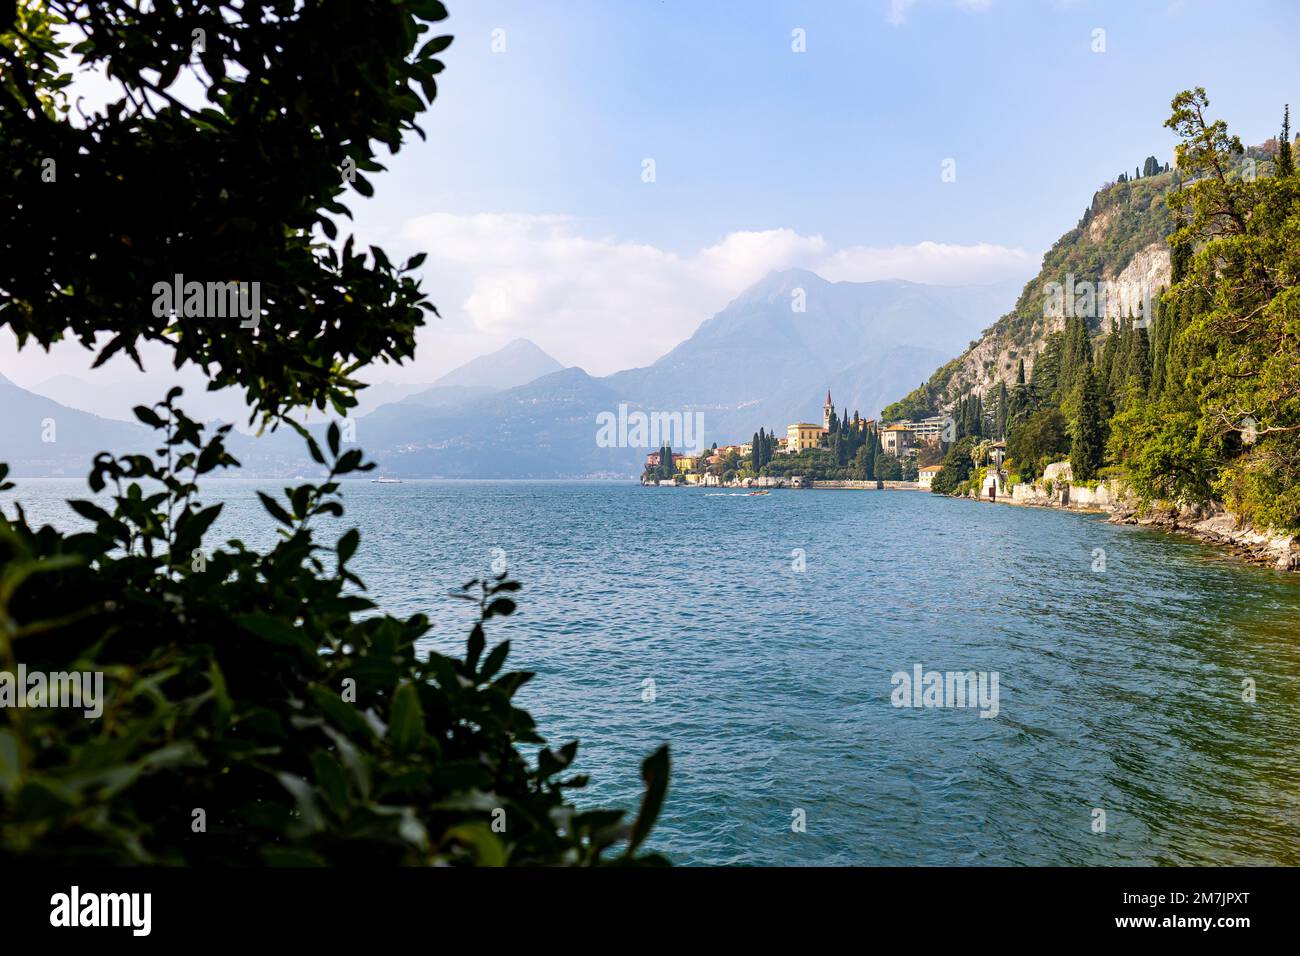 Voir le formulaire Villa Monastero à la ville de Varenna, Lac de Côme, Italie Banque D'Images